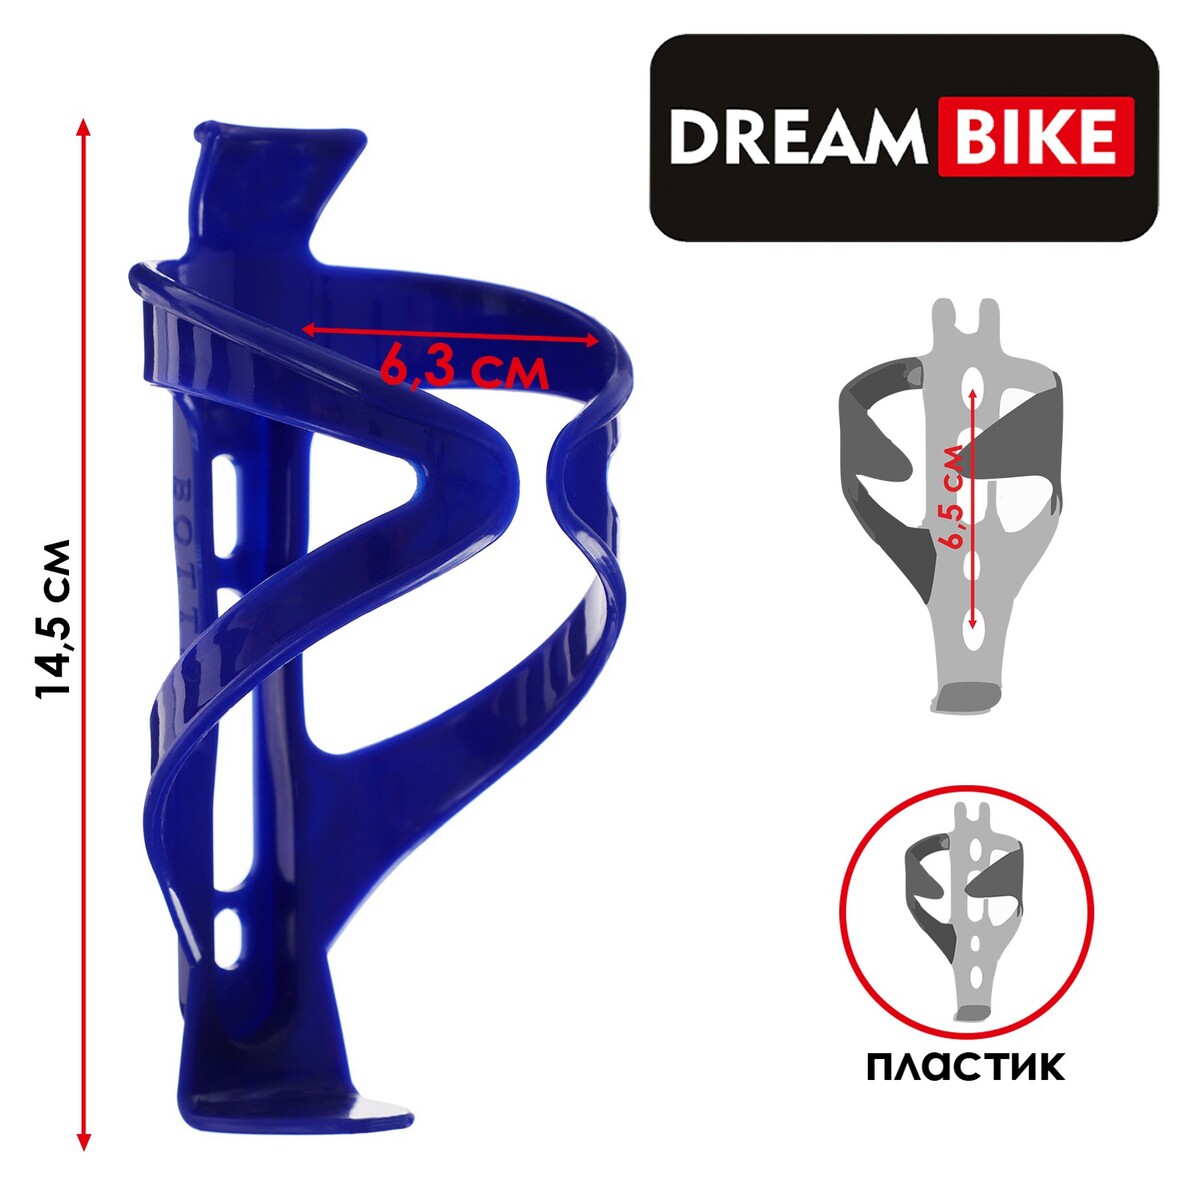 Флягодержатель dream bike, пластик, цвет синий, без крепежных болтов